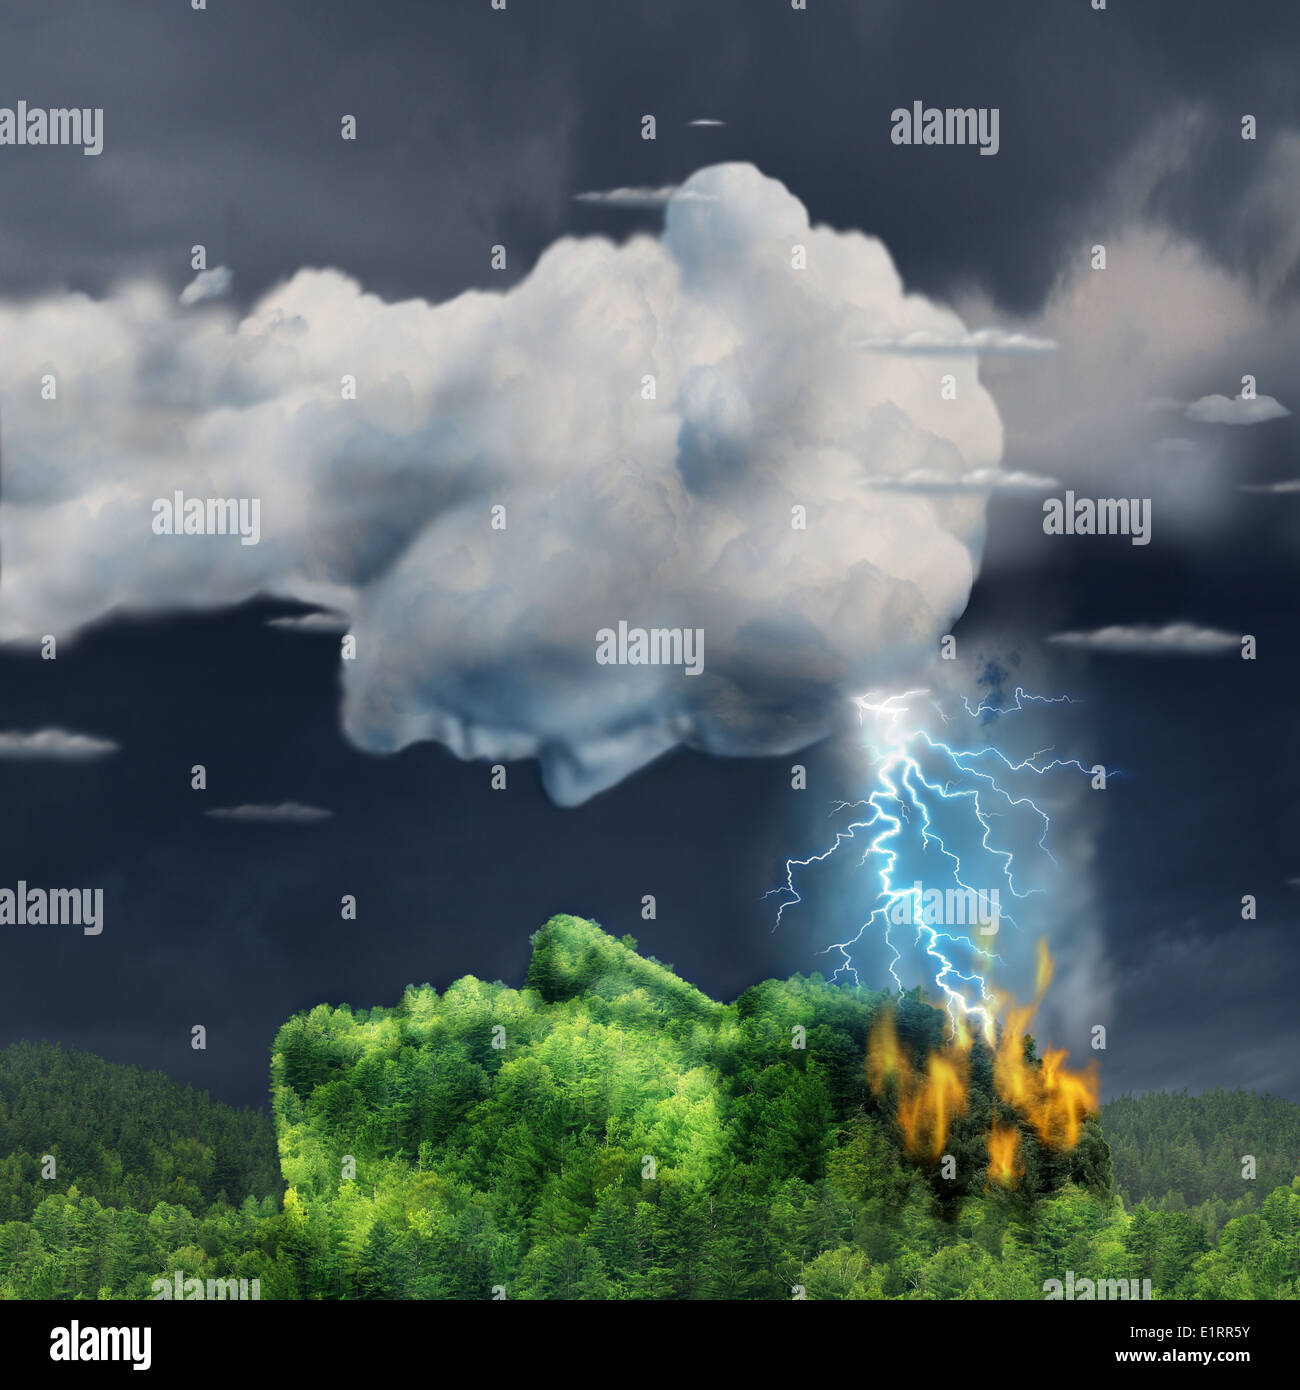 La comunicazione umana concetto con un fulmine storm cloud e la masterizzazione di foresta montana conformata come una testa in un business come metafora per Foto Stock